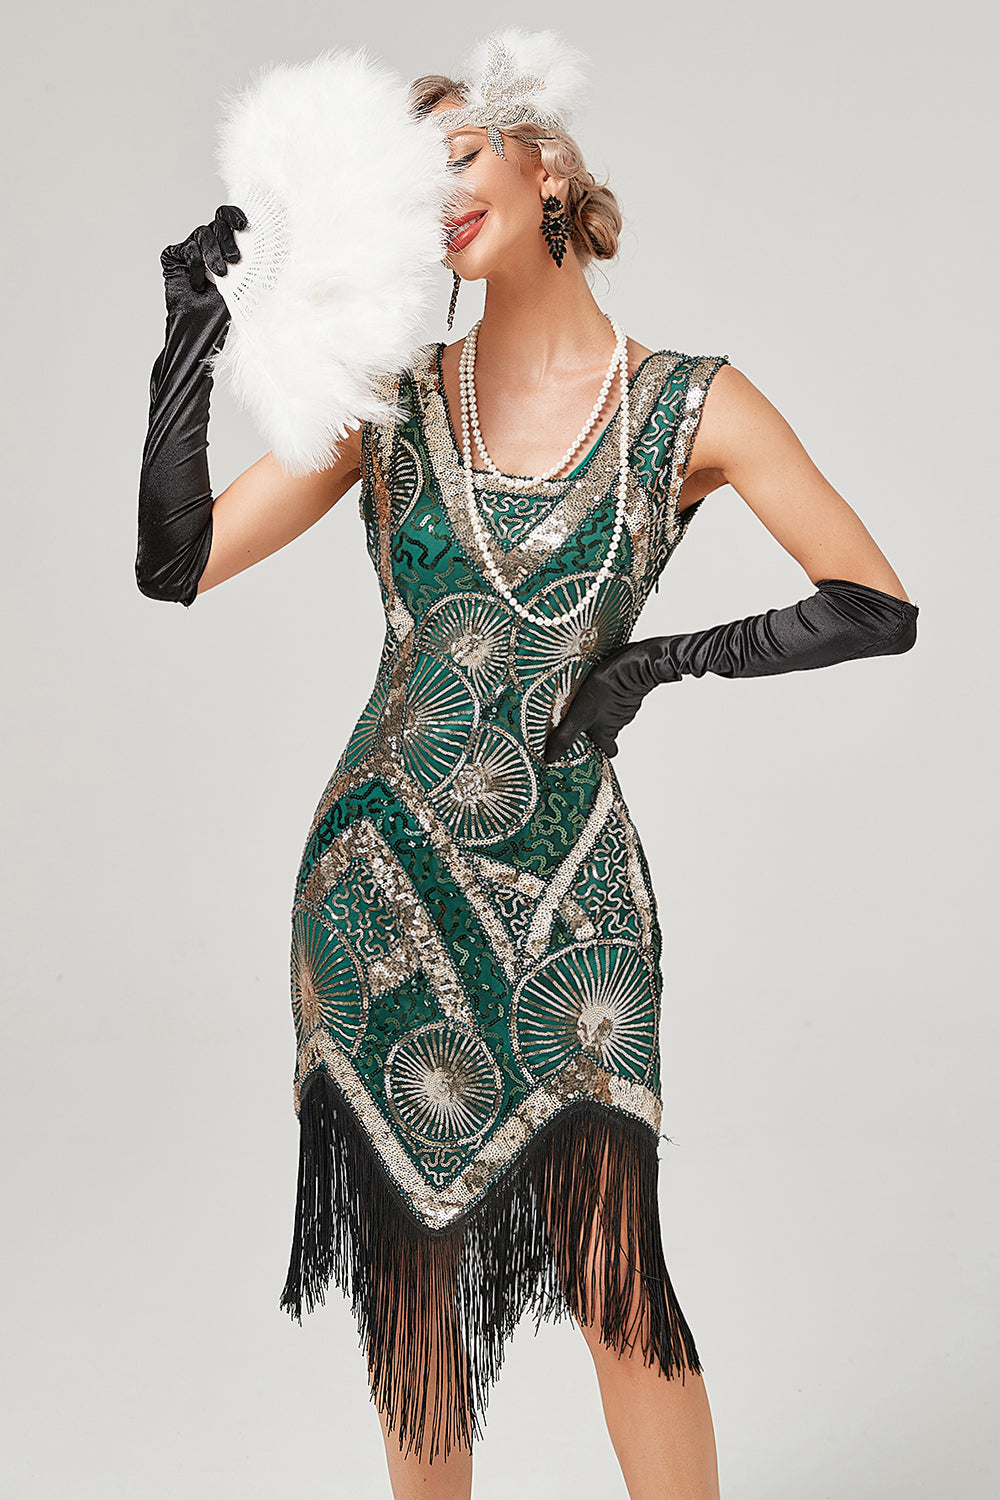 Ciemnozielona sukienka Flapper z 1920 roku z frędzlami